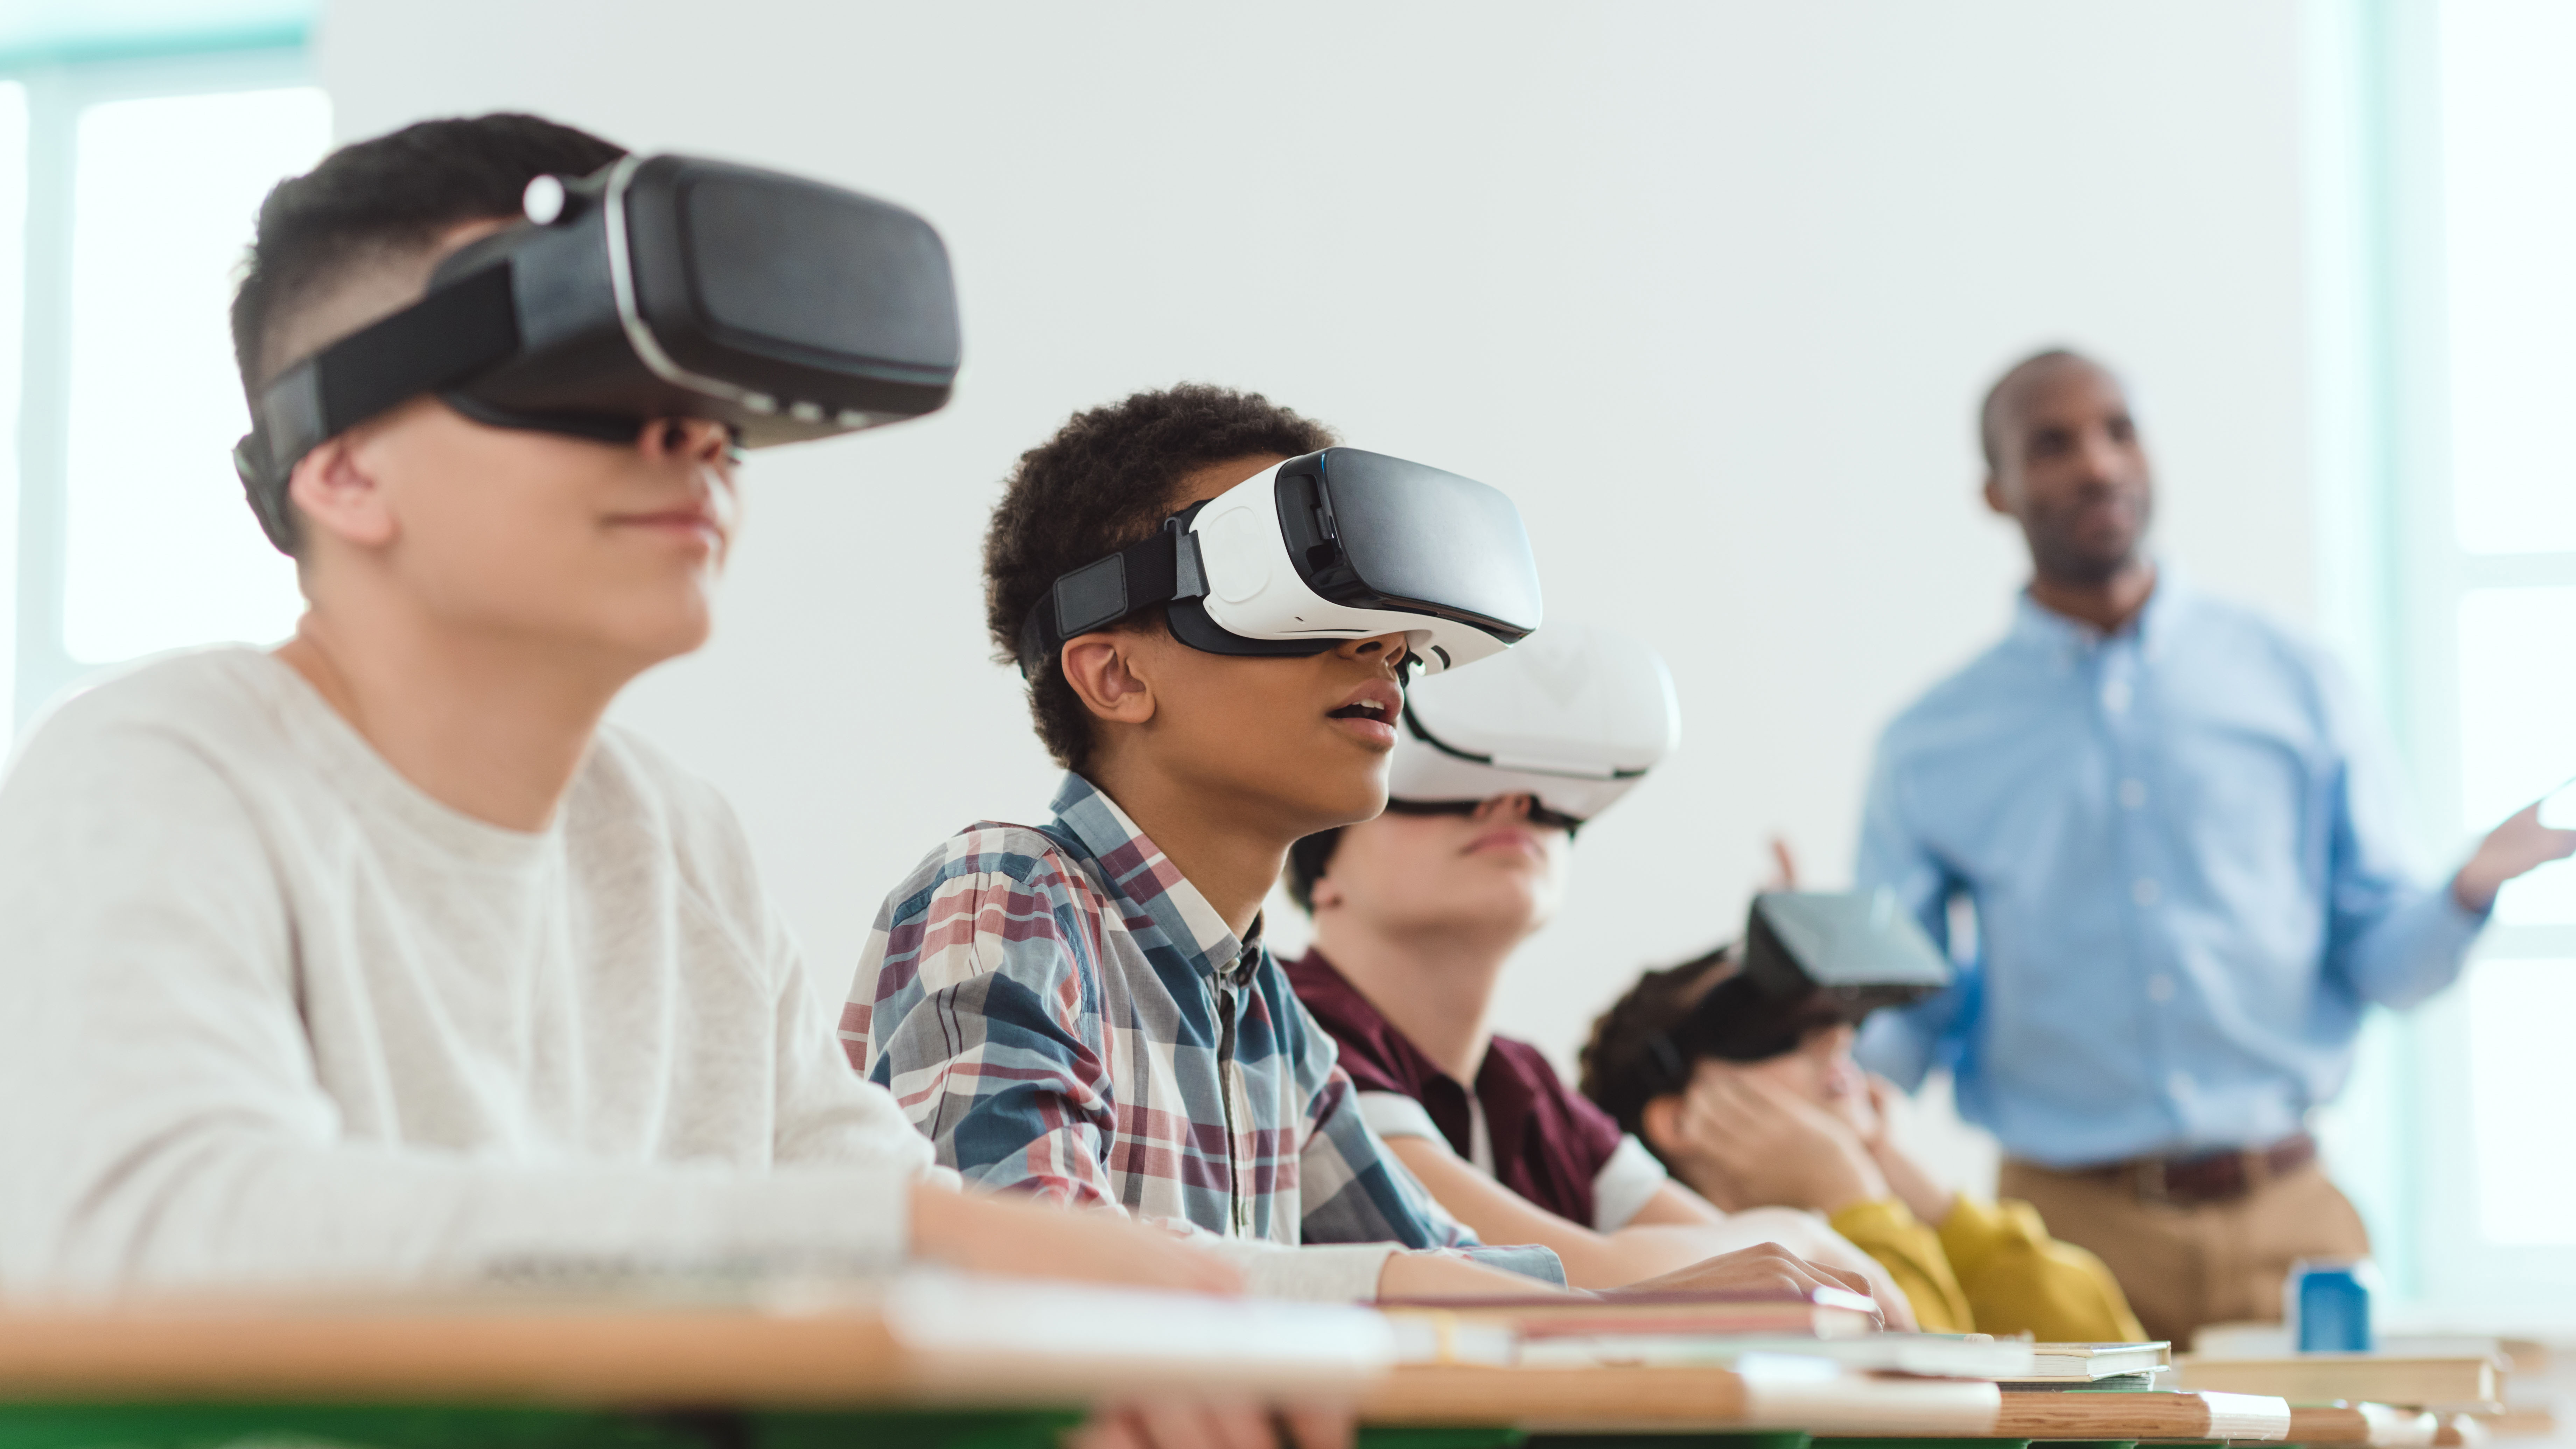 Vr класс. Виар технологии в образовании. Виртуальная реальность в образовании. Виртуальные очки в школе. Очки виртуальной реальности на уроке.